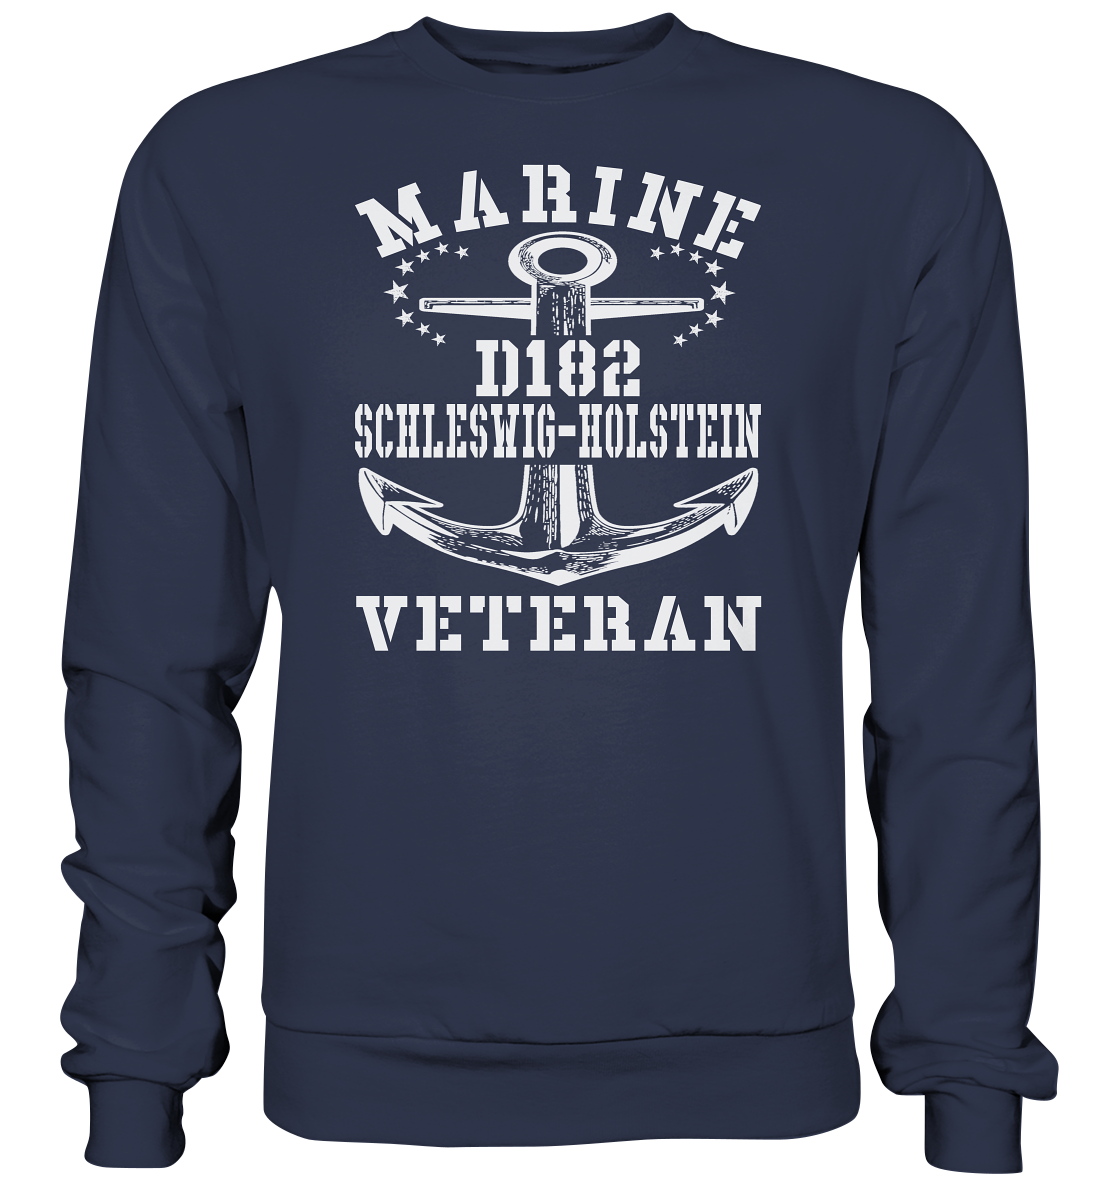 Zerstörer D182 SCHLESWIG-HOLSTEIN Marine Veteran  - Premium Sweatshirt